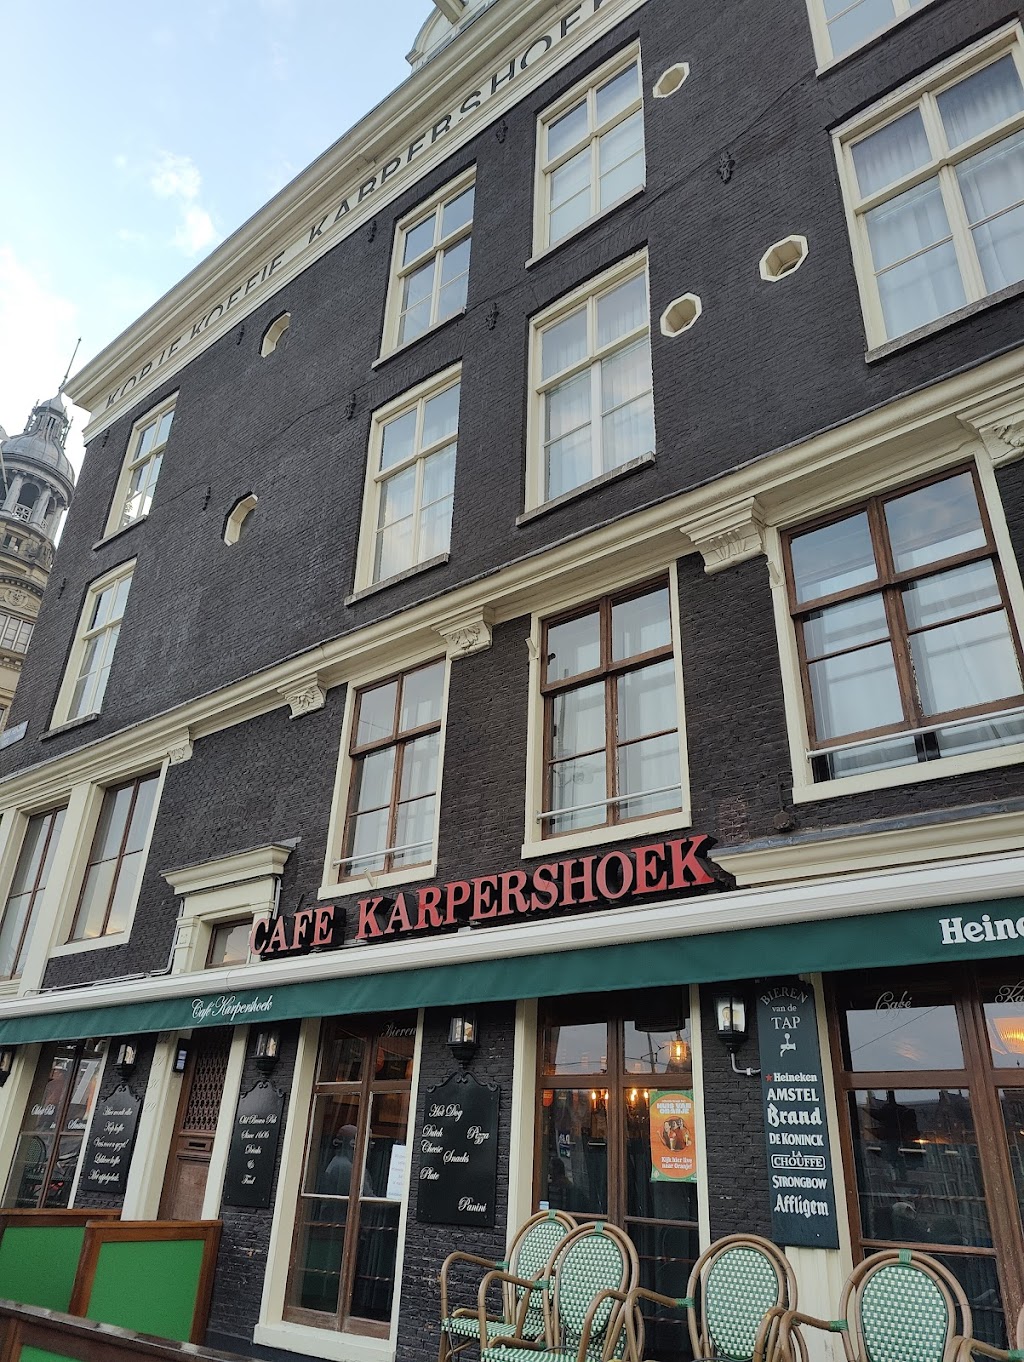 Café Karpershoek | Martelaarsgracht 2, 1012 TP Amsterdam, Netherlands | Phone: 020 624 7886